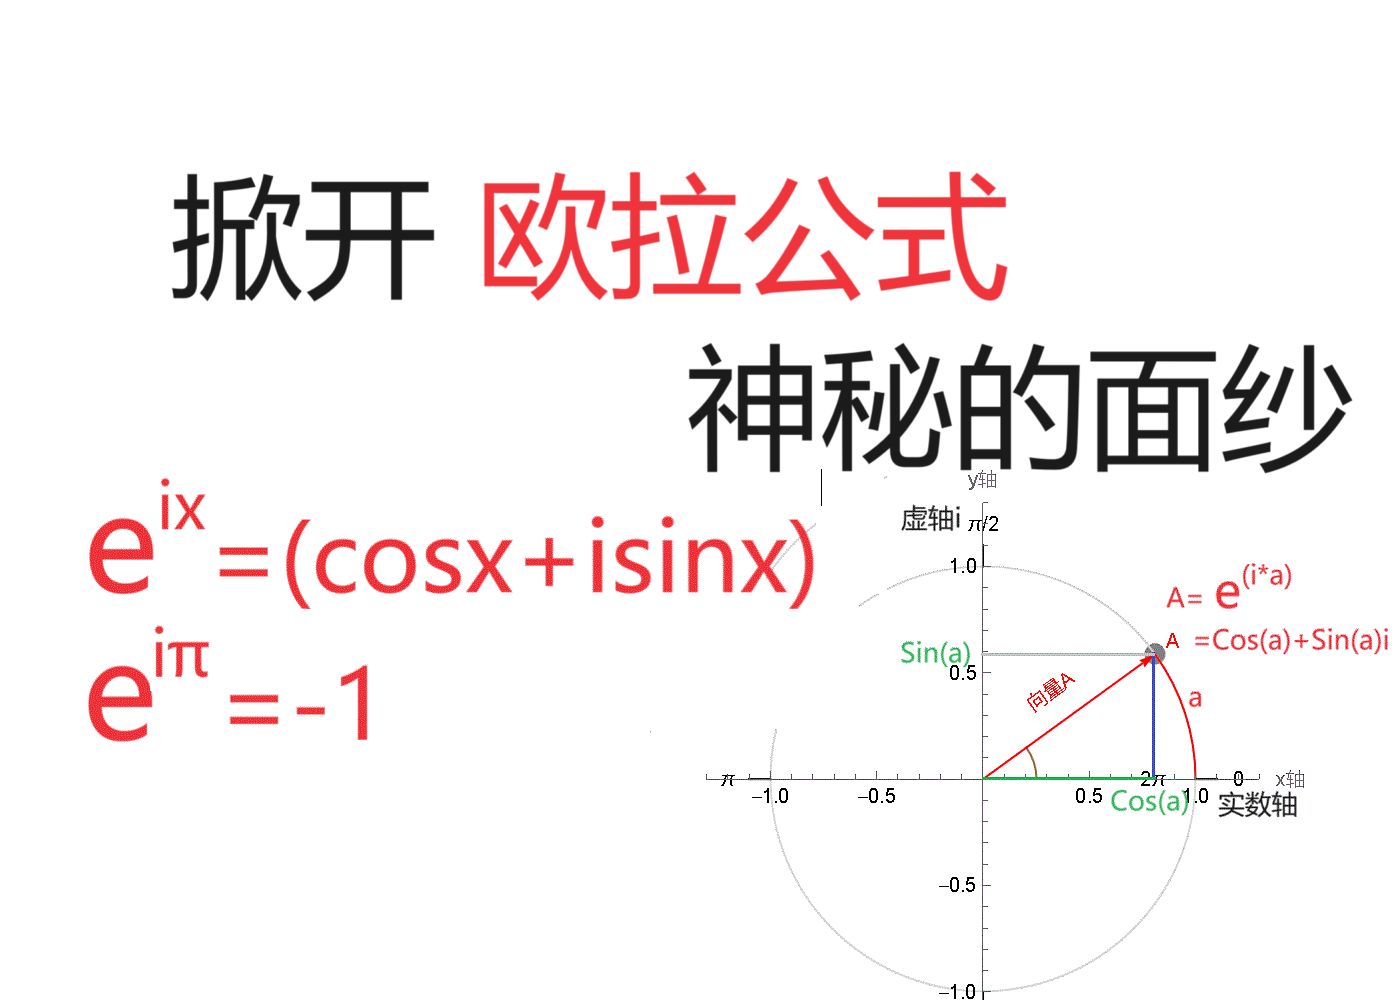 欧拉公式 其实就是圆周旋转，e^(it)=(cos t+isin t)  就是e^(it) 的x,y投影， e^(i*π)=-1 就是从1旋转到-1